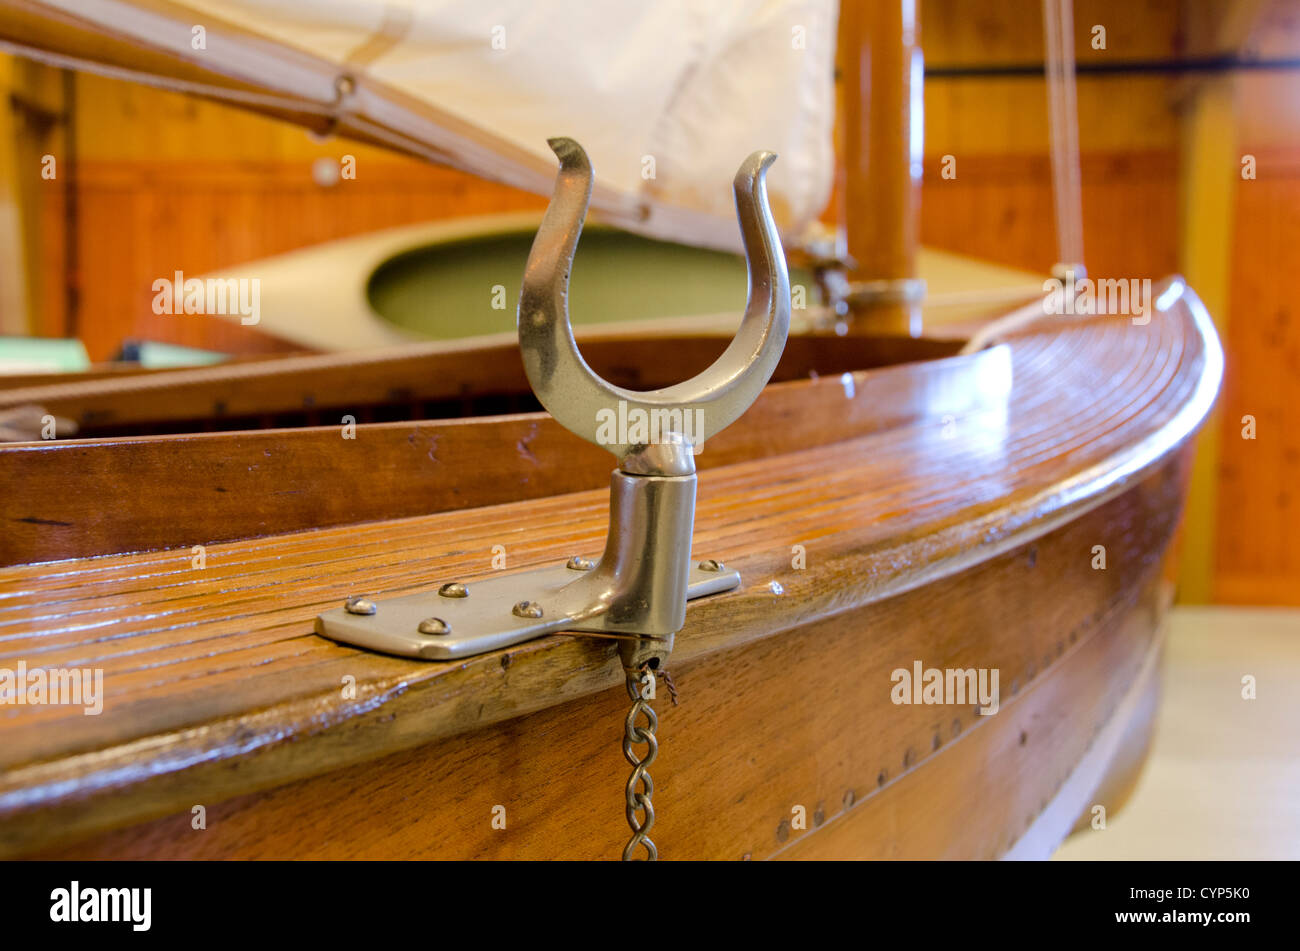 New York, mille isole sul fiume San Lorenzo. Clayton, antico Museo della barca. In legno classico skiff canottaggio "Felicita', circa 1902 Foto Stock